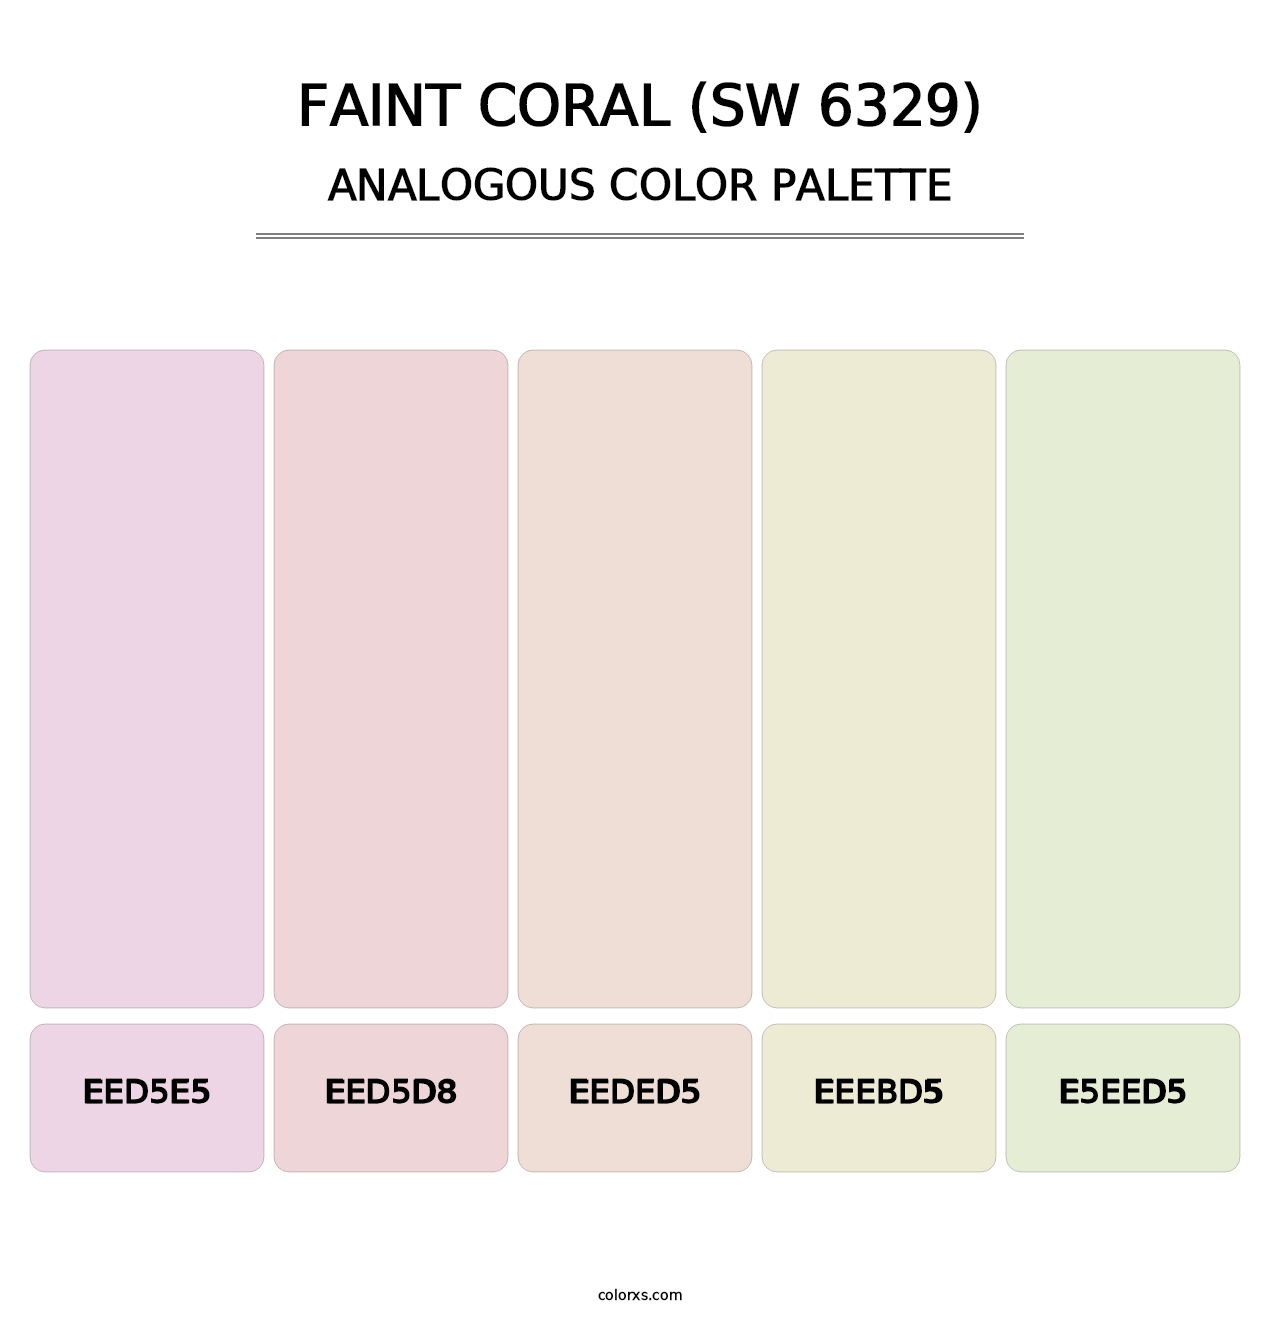 Faint Coral (SW 6329) - Analogous Color Palette